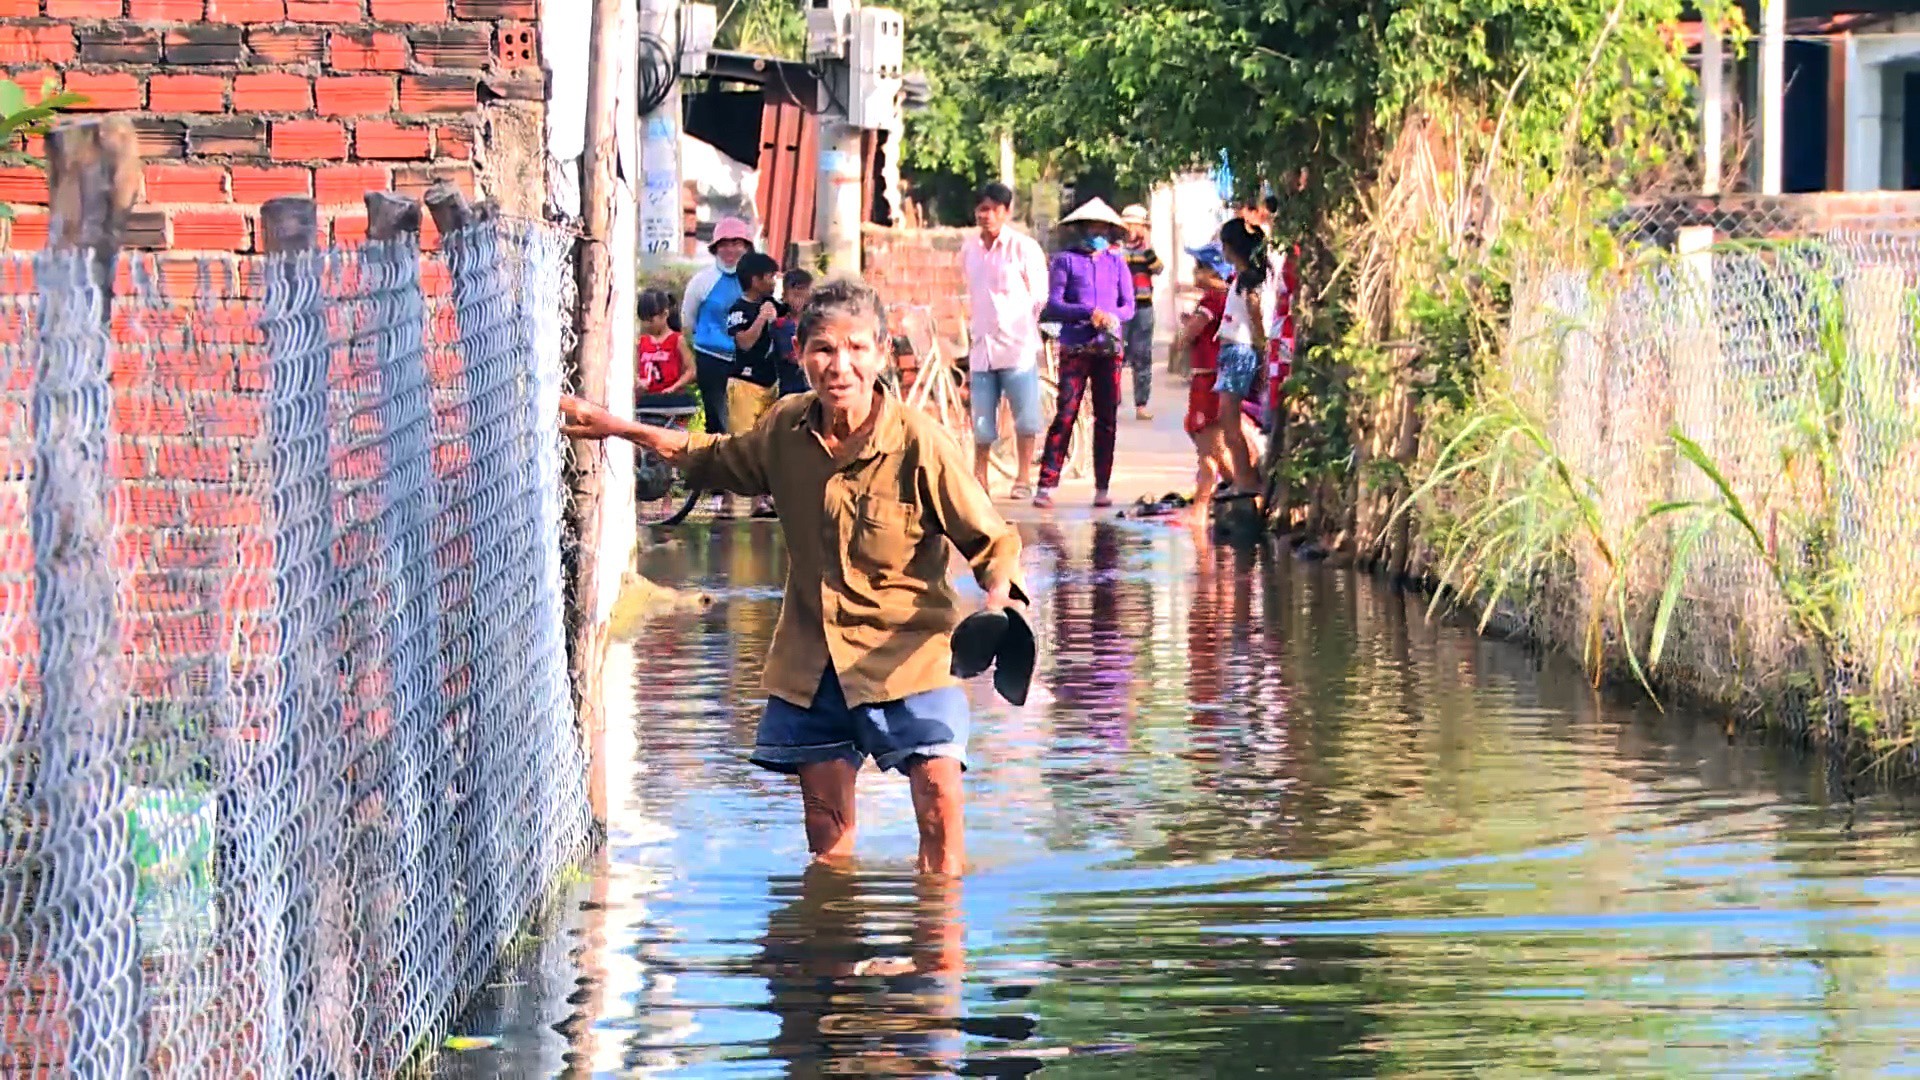 Gần 3 tháng, 40 hộ dân bị nhấn chìm trong lụt lội, ô nhiễm! - Ảnh 4.